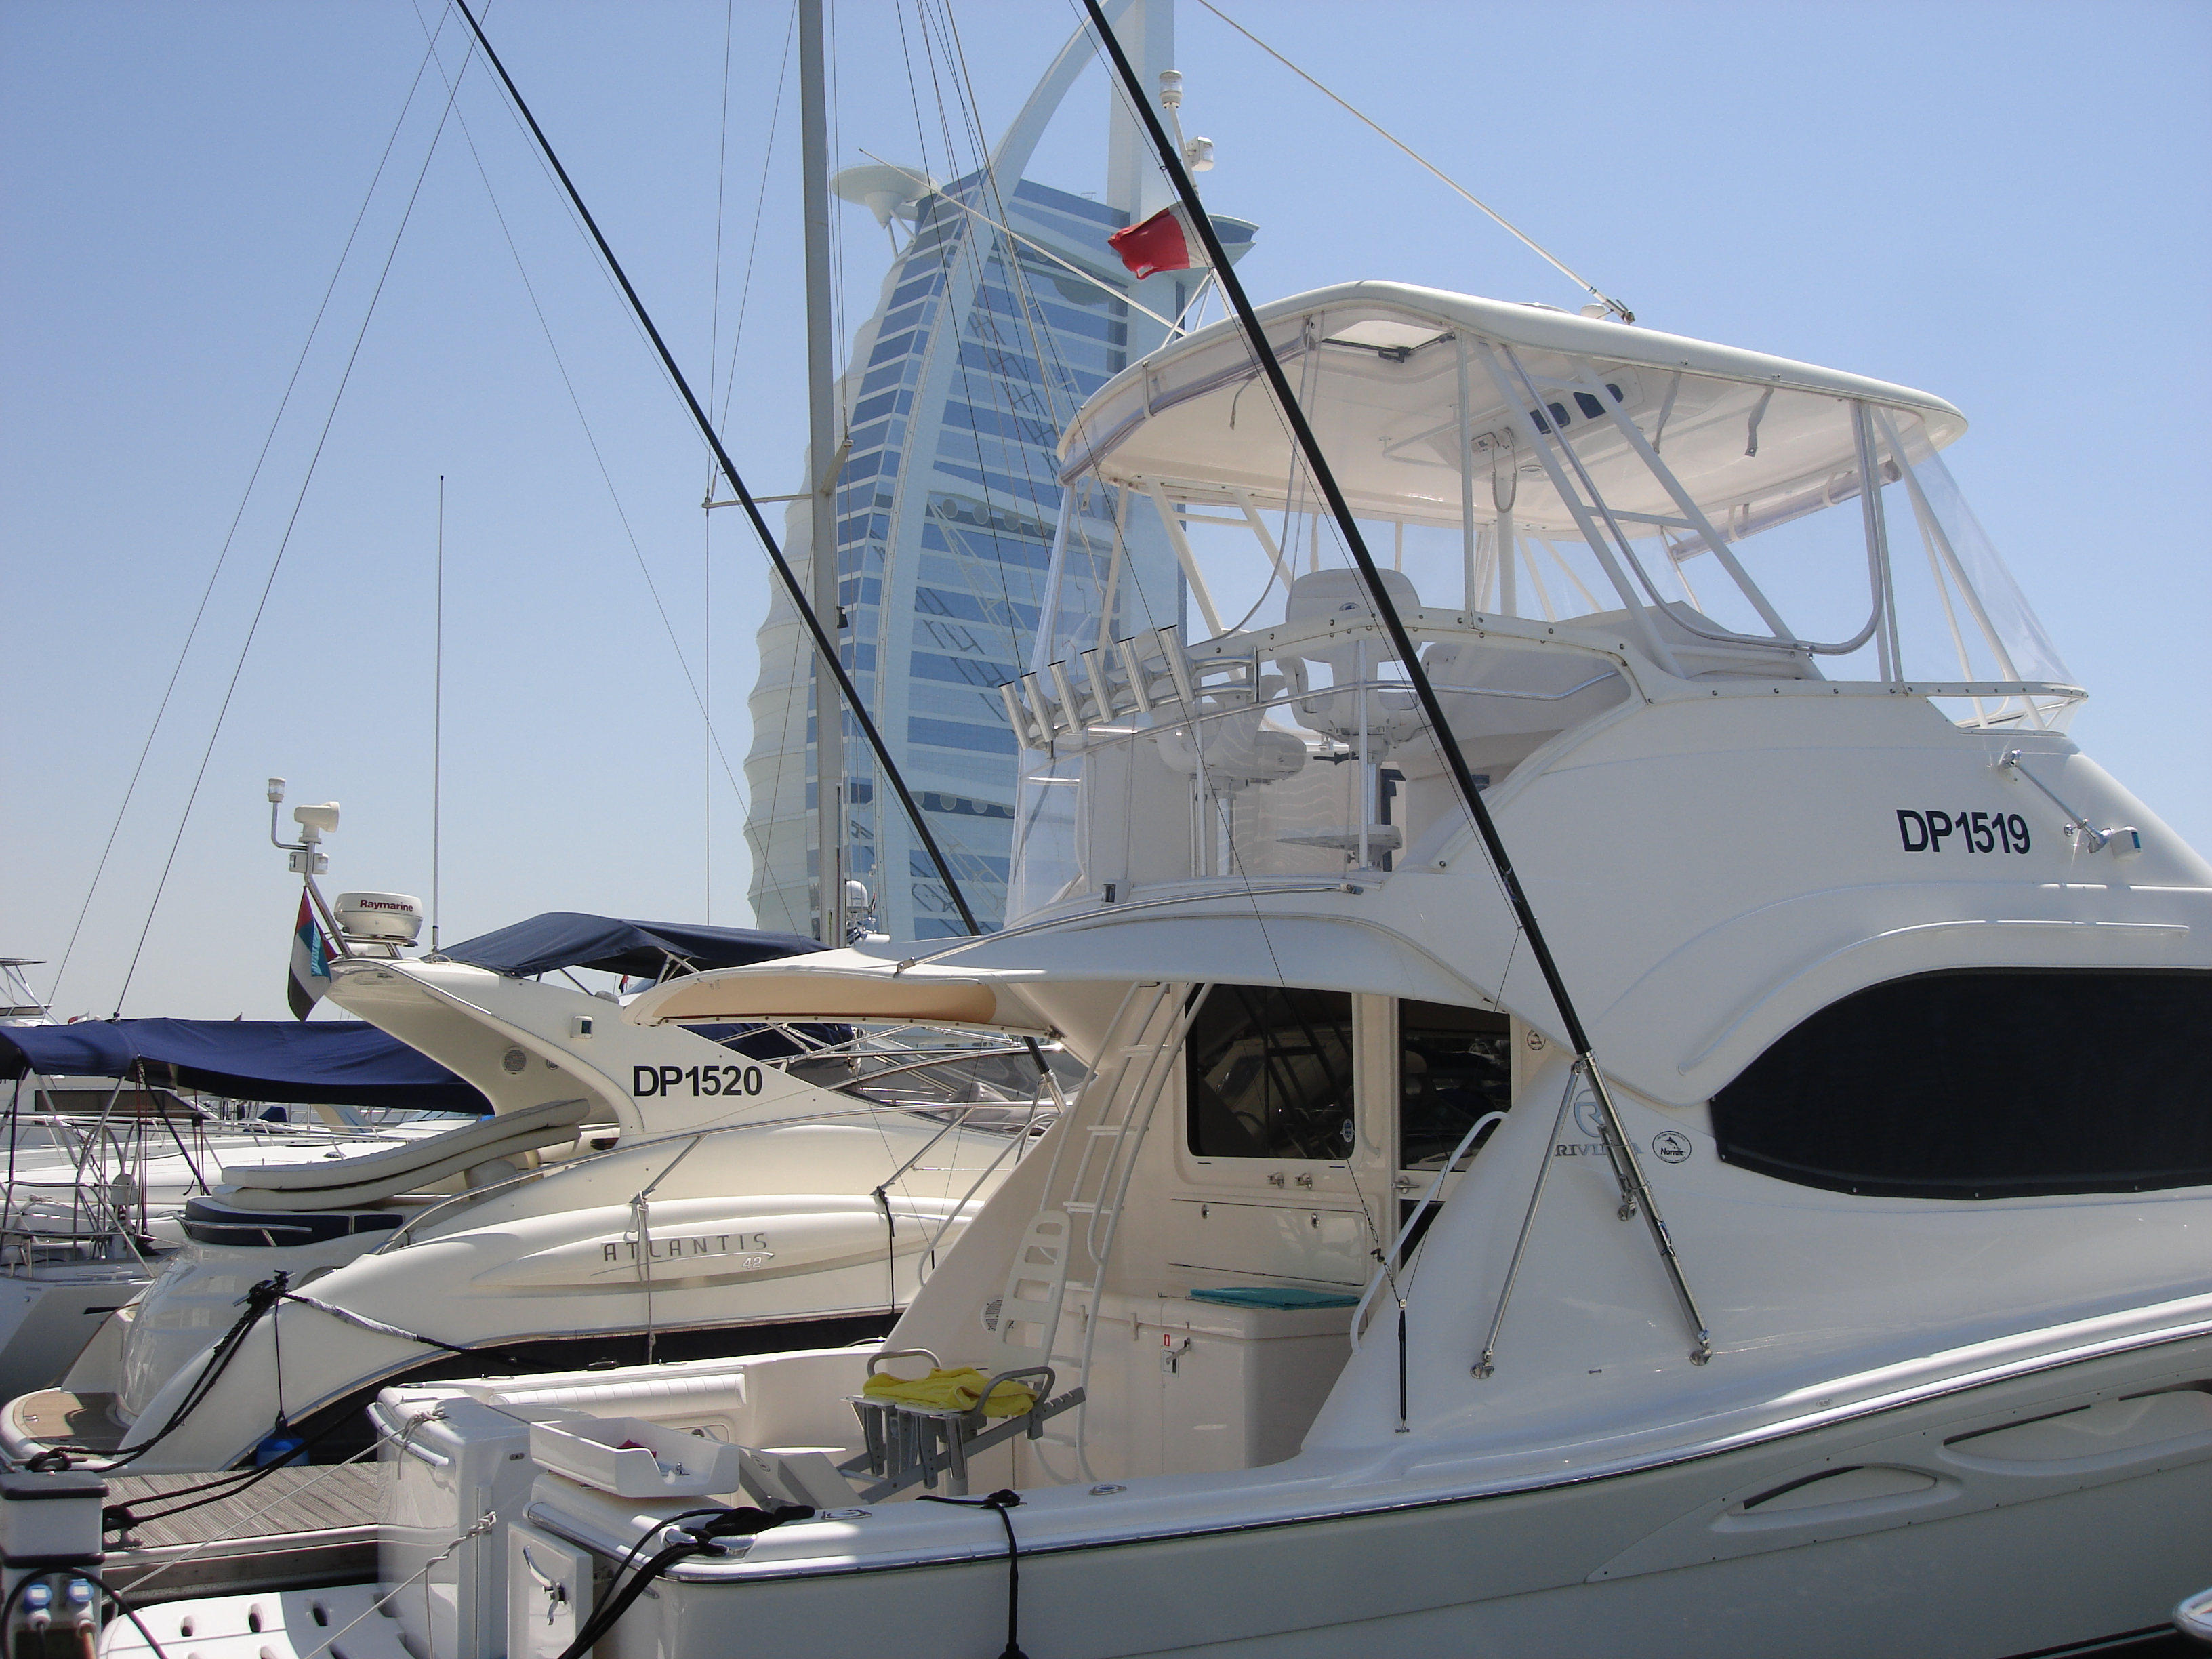 Yachts in the Dubai Marina 